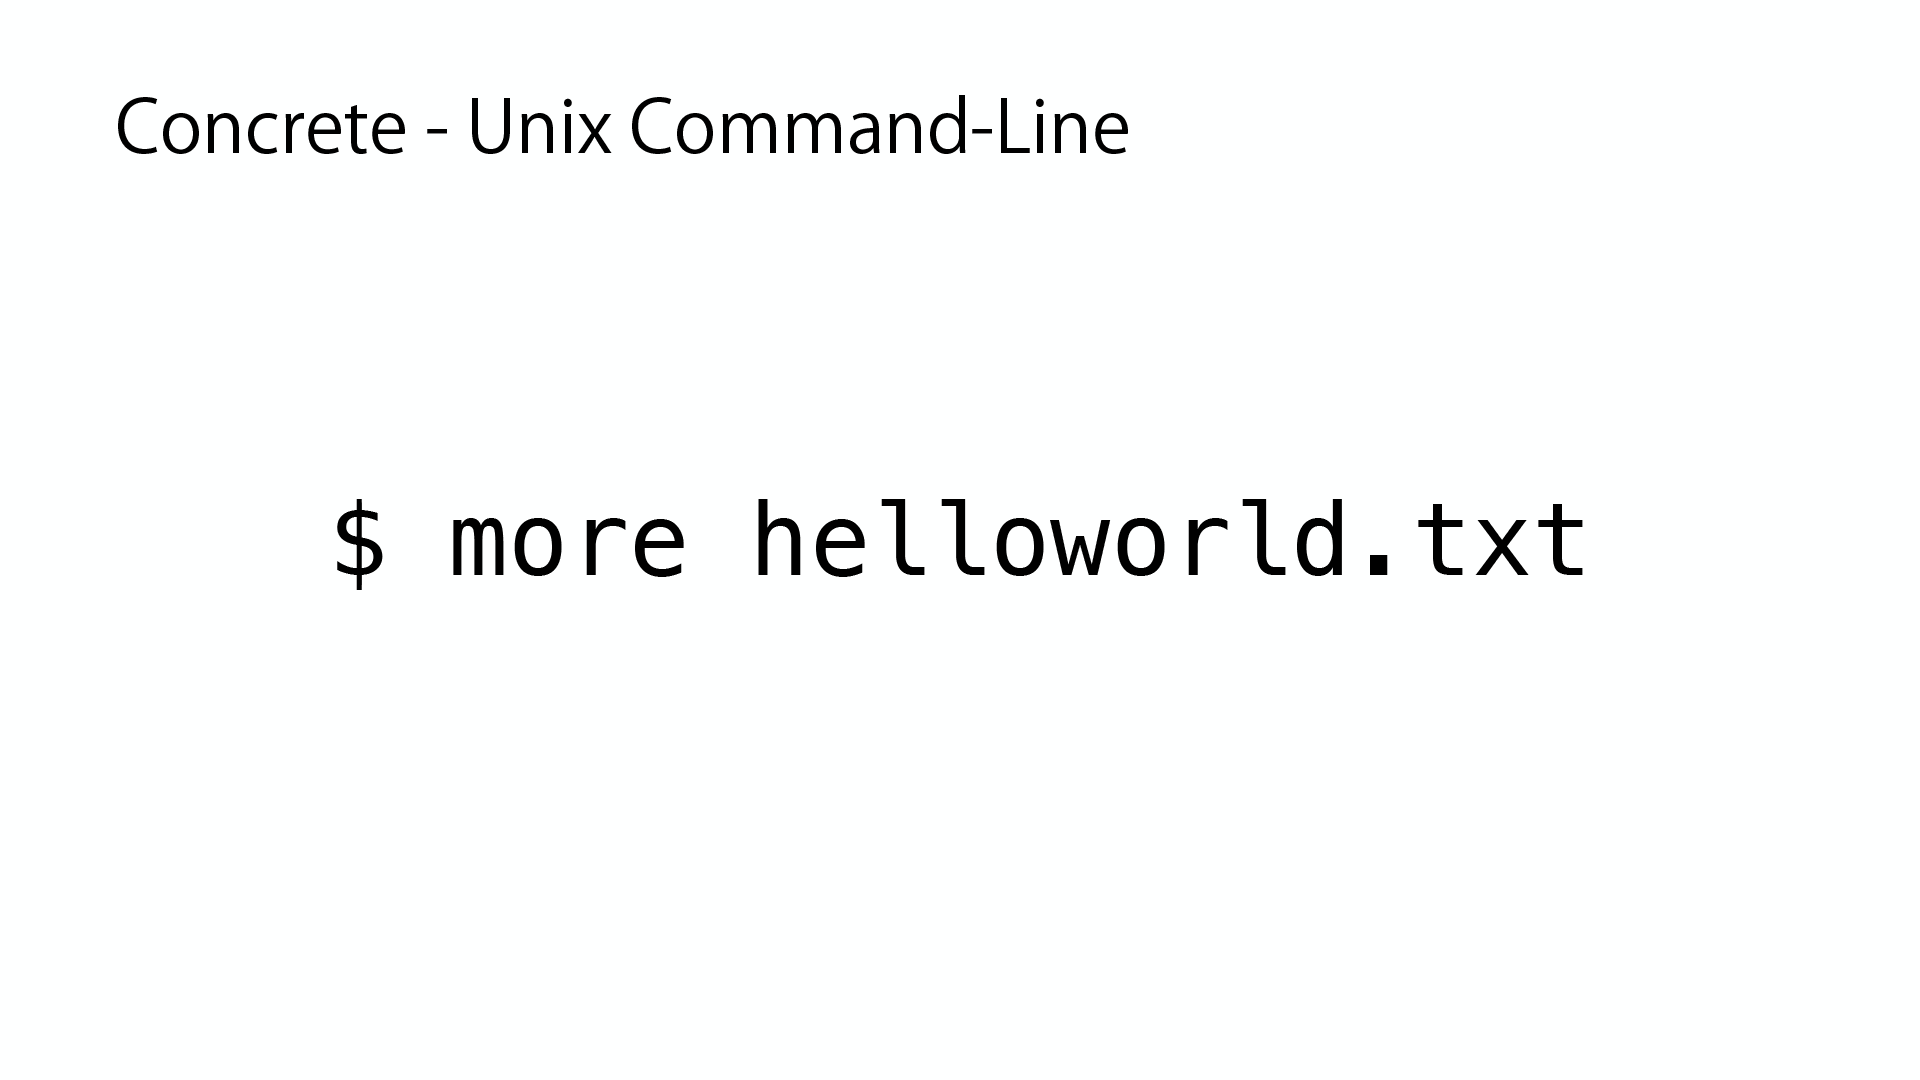 Concrete - Unix Command-Line: $ more helloworld.txt